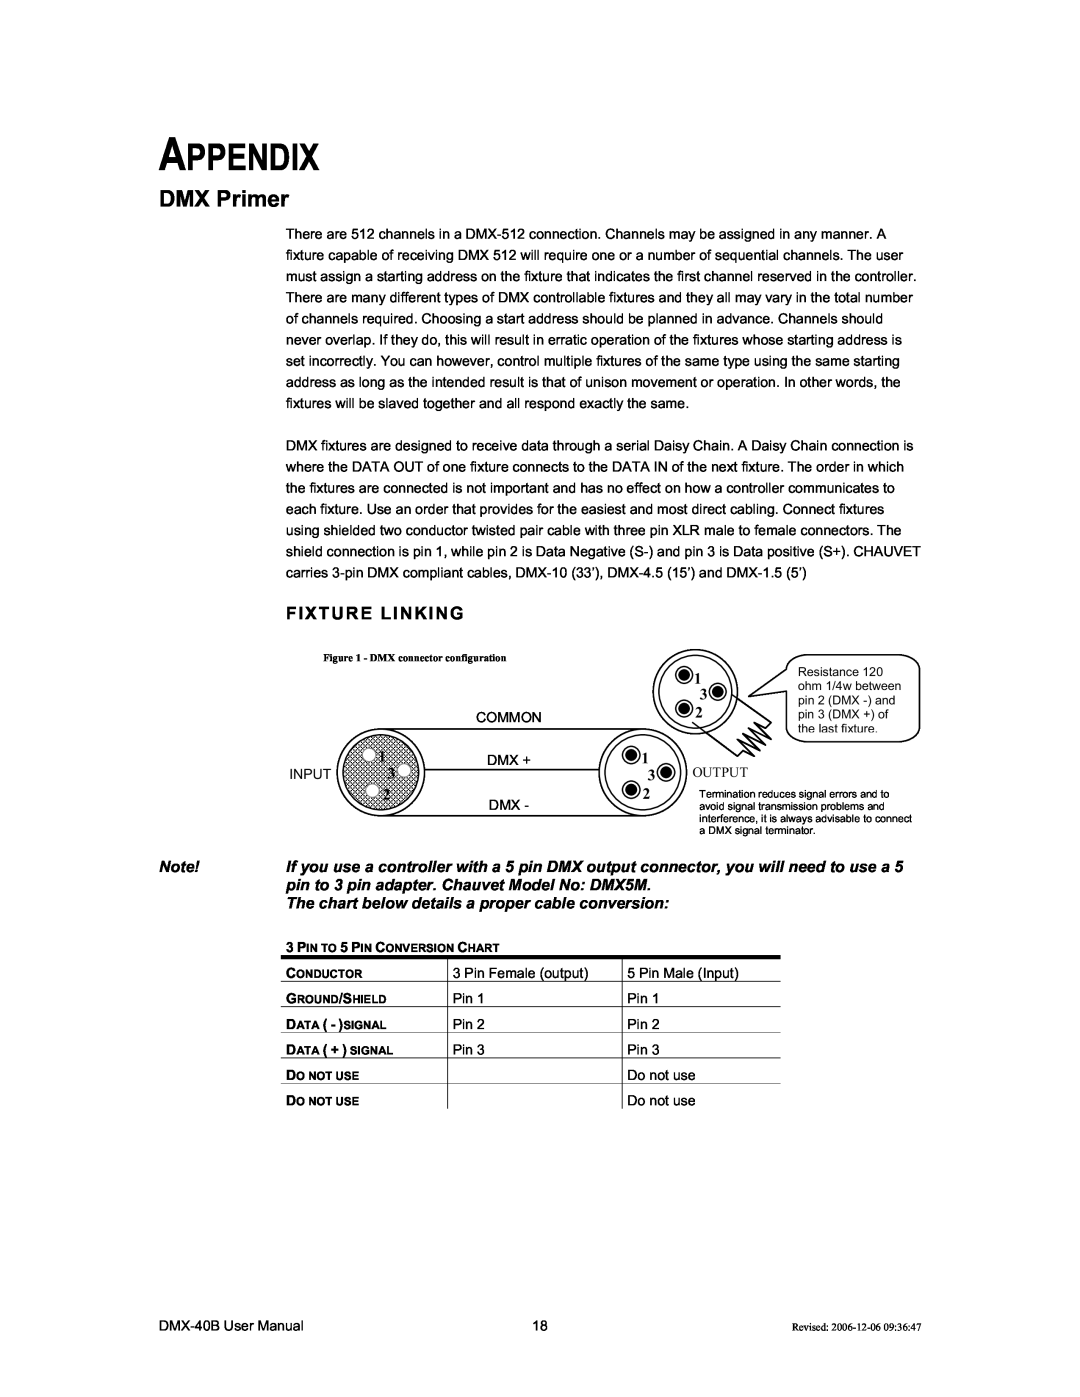 Chauvet DMX-40B user manual Appendix, DMX Primer, Fixture Linking 